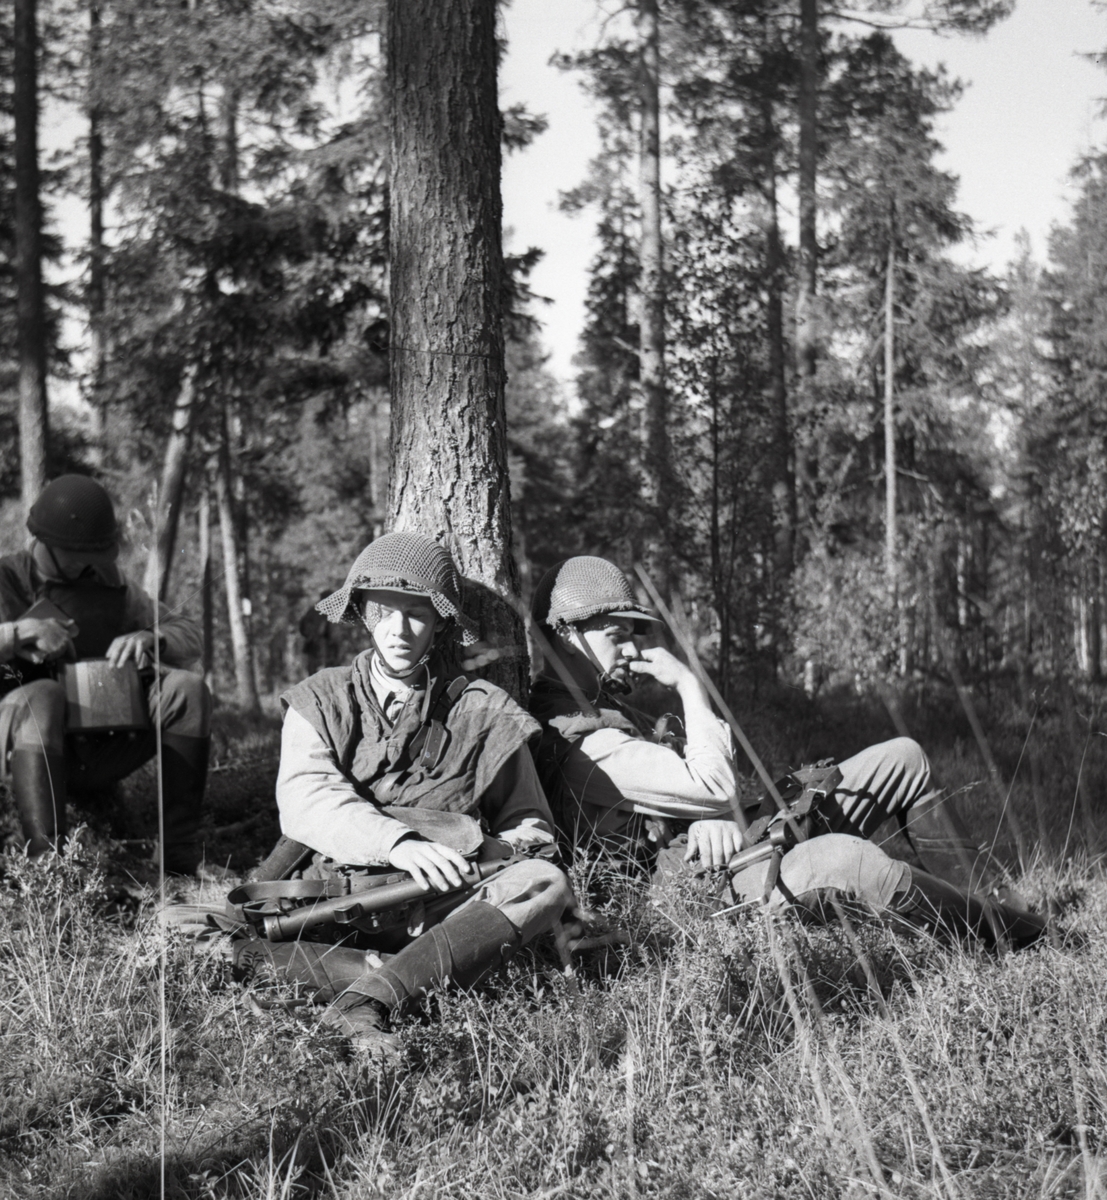 Rast i skogen. Norrlands dragonregemente K4, Umeå, 1955-1956.